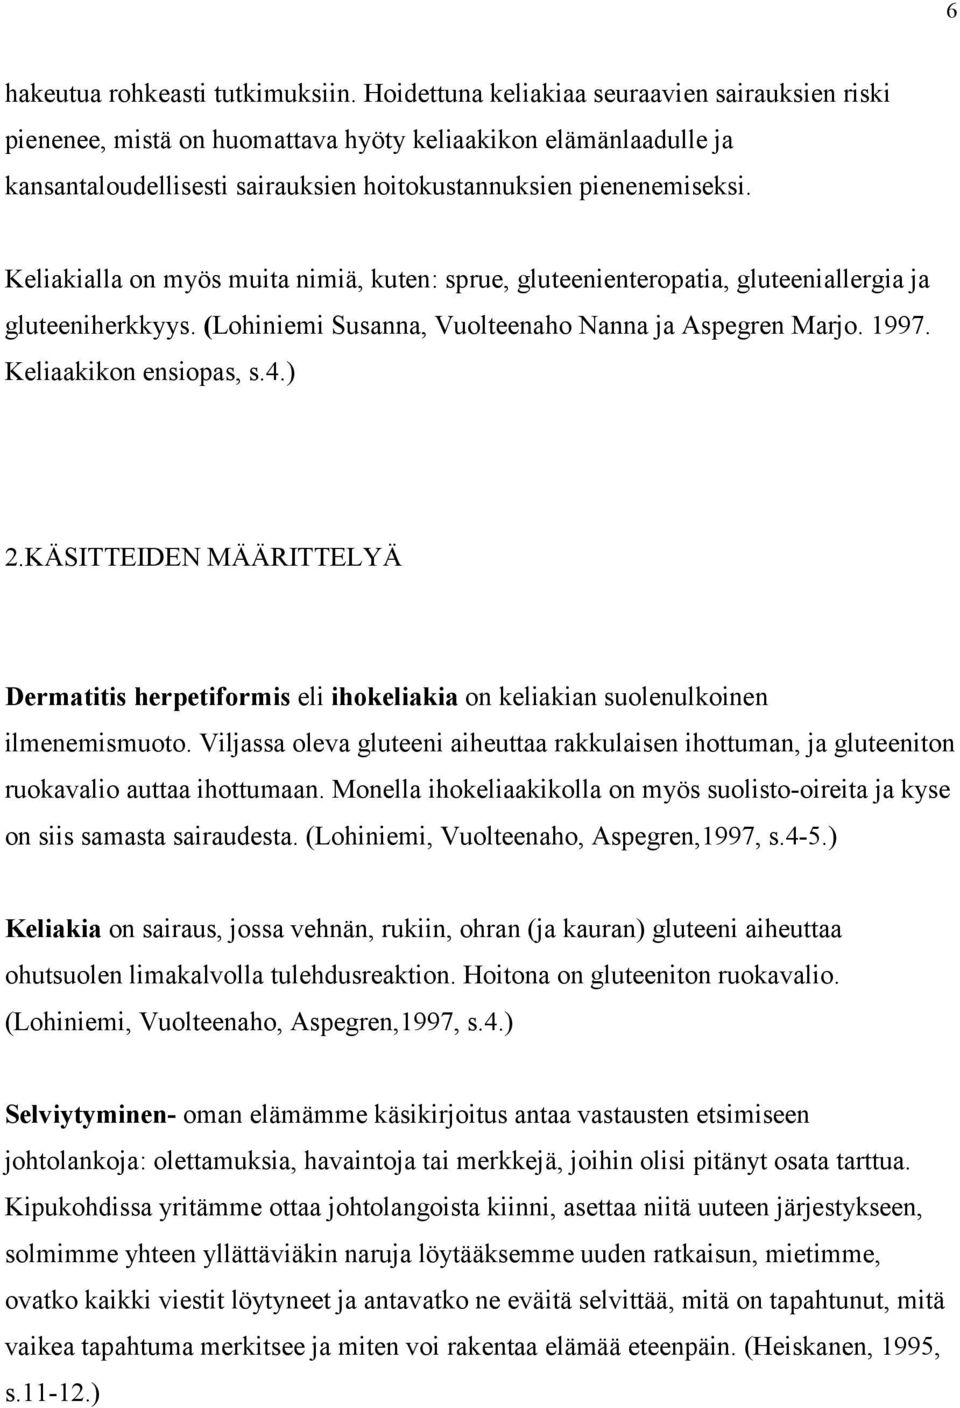 Keliakialla on myös muita nimiä, kuten: sprue, gluteenienteropatia, gluteeniallergia ja gluteeniherkkyys. (Lohiniemi Susanna, Vuolteenaho Nanna ja Aspegren Marjo. 1997. Keliaakikon ensiopas, s.4.) 2.